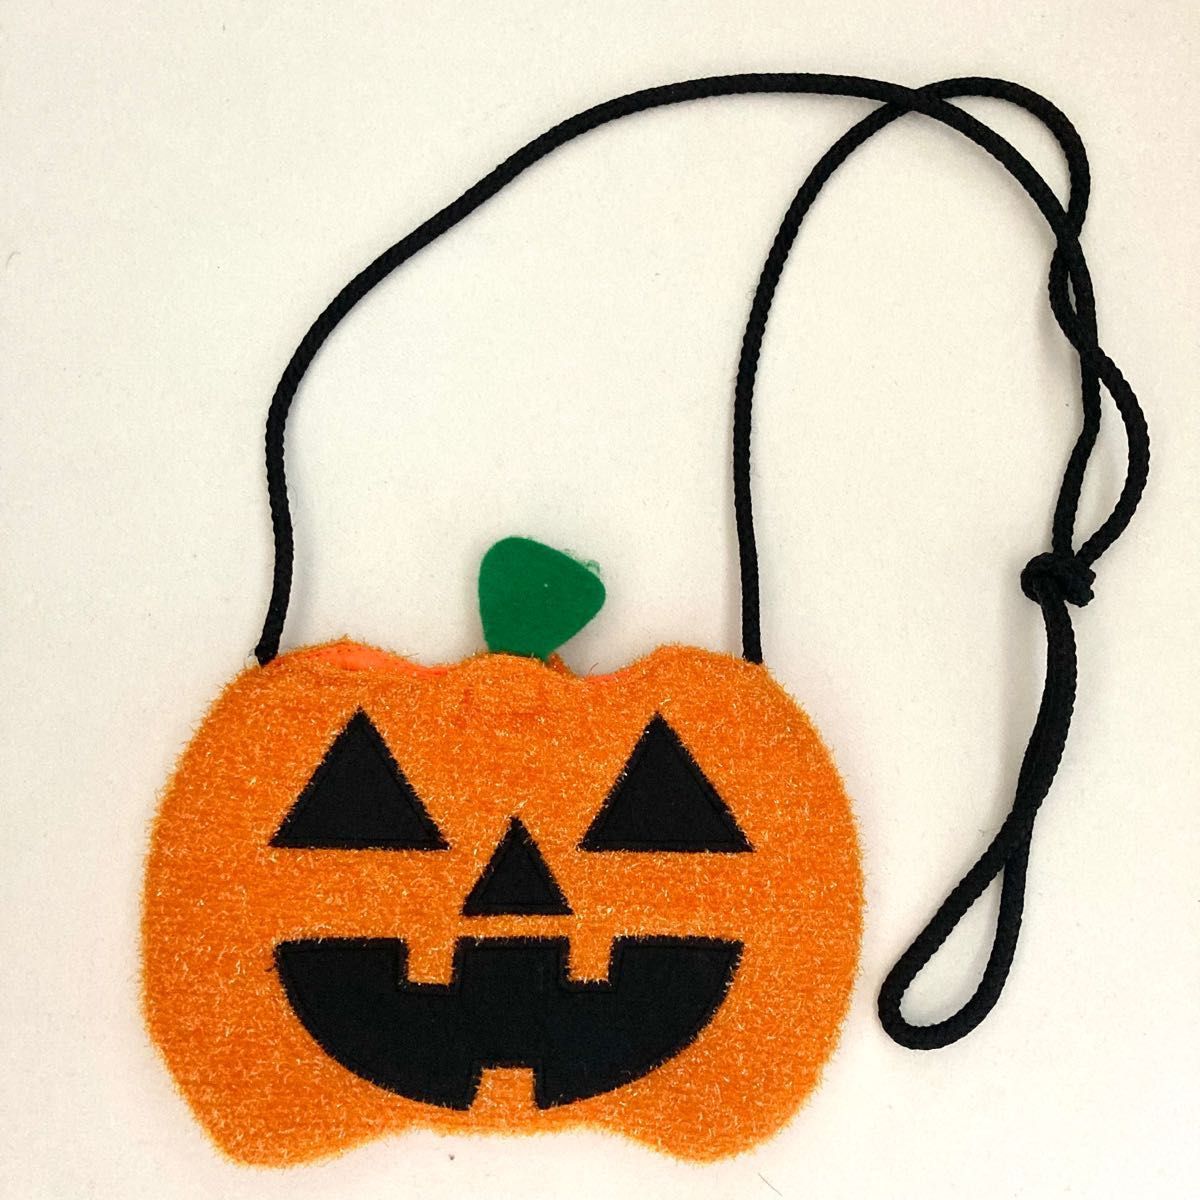 ハロウィン コスプレ 赤ずきん かぼちゃ 仮装 衣装 コスチューム Halloween イベント パーティー マント付き